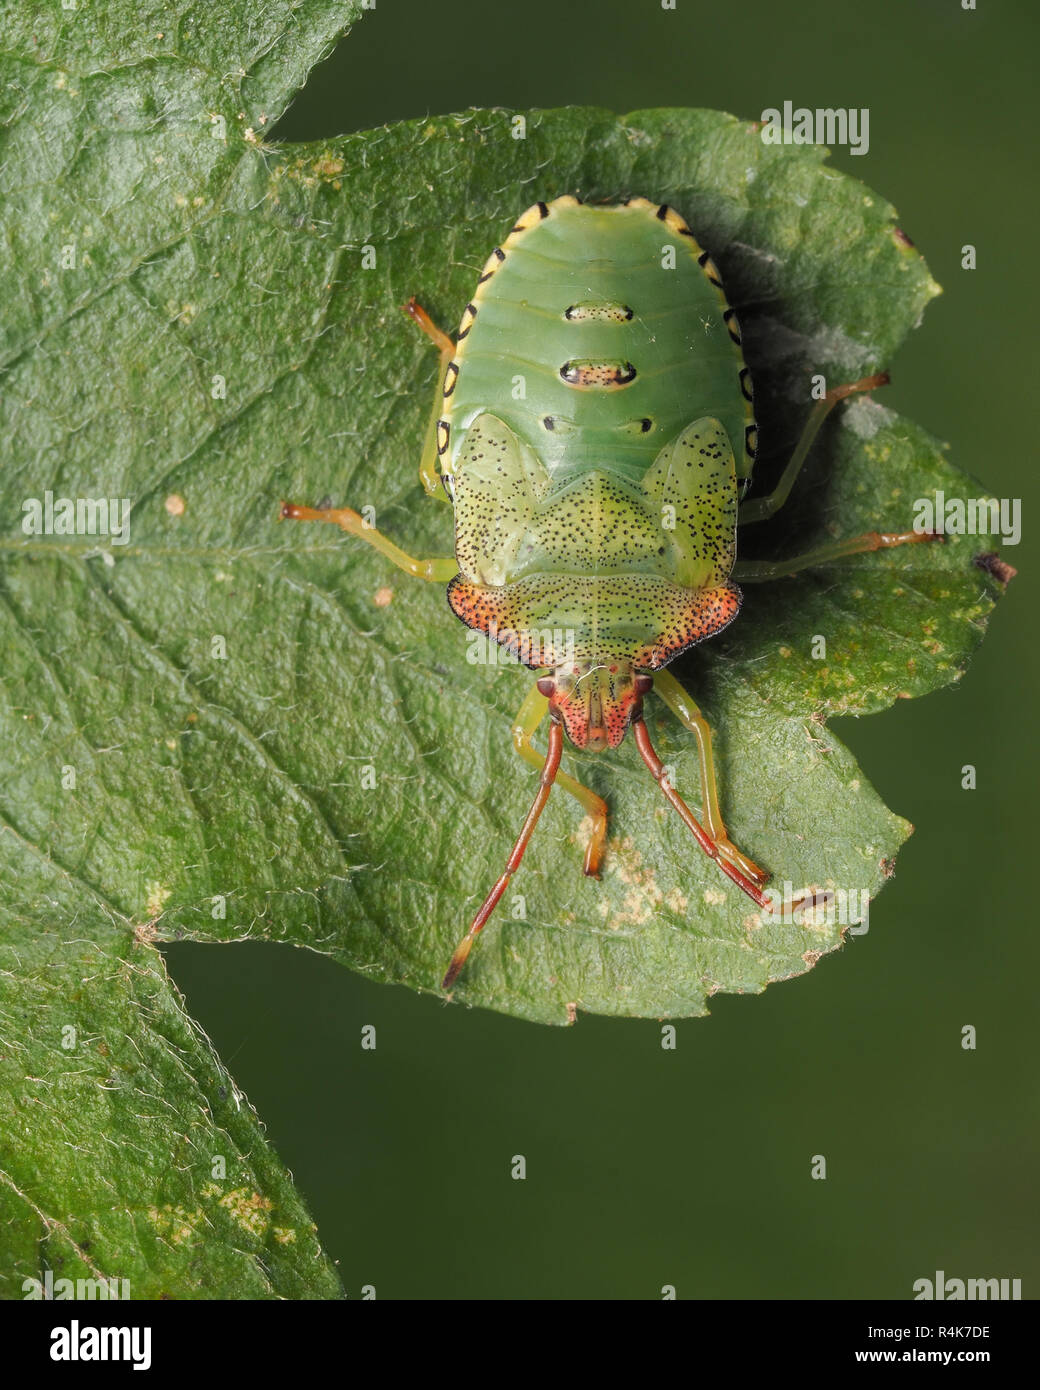 Hawthorn Shieldbug Acanthosoma haemorrhoidale (nymphe) reposant sur une feuille d'aubépine. Tipperary, Irlande Banque D'Images